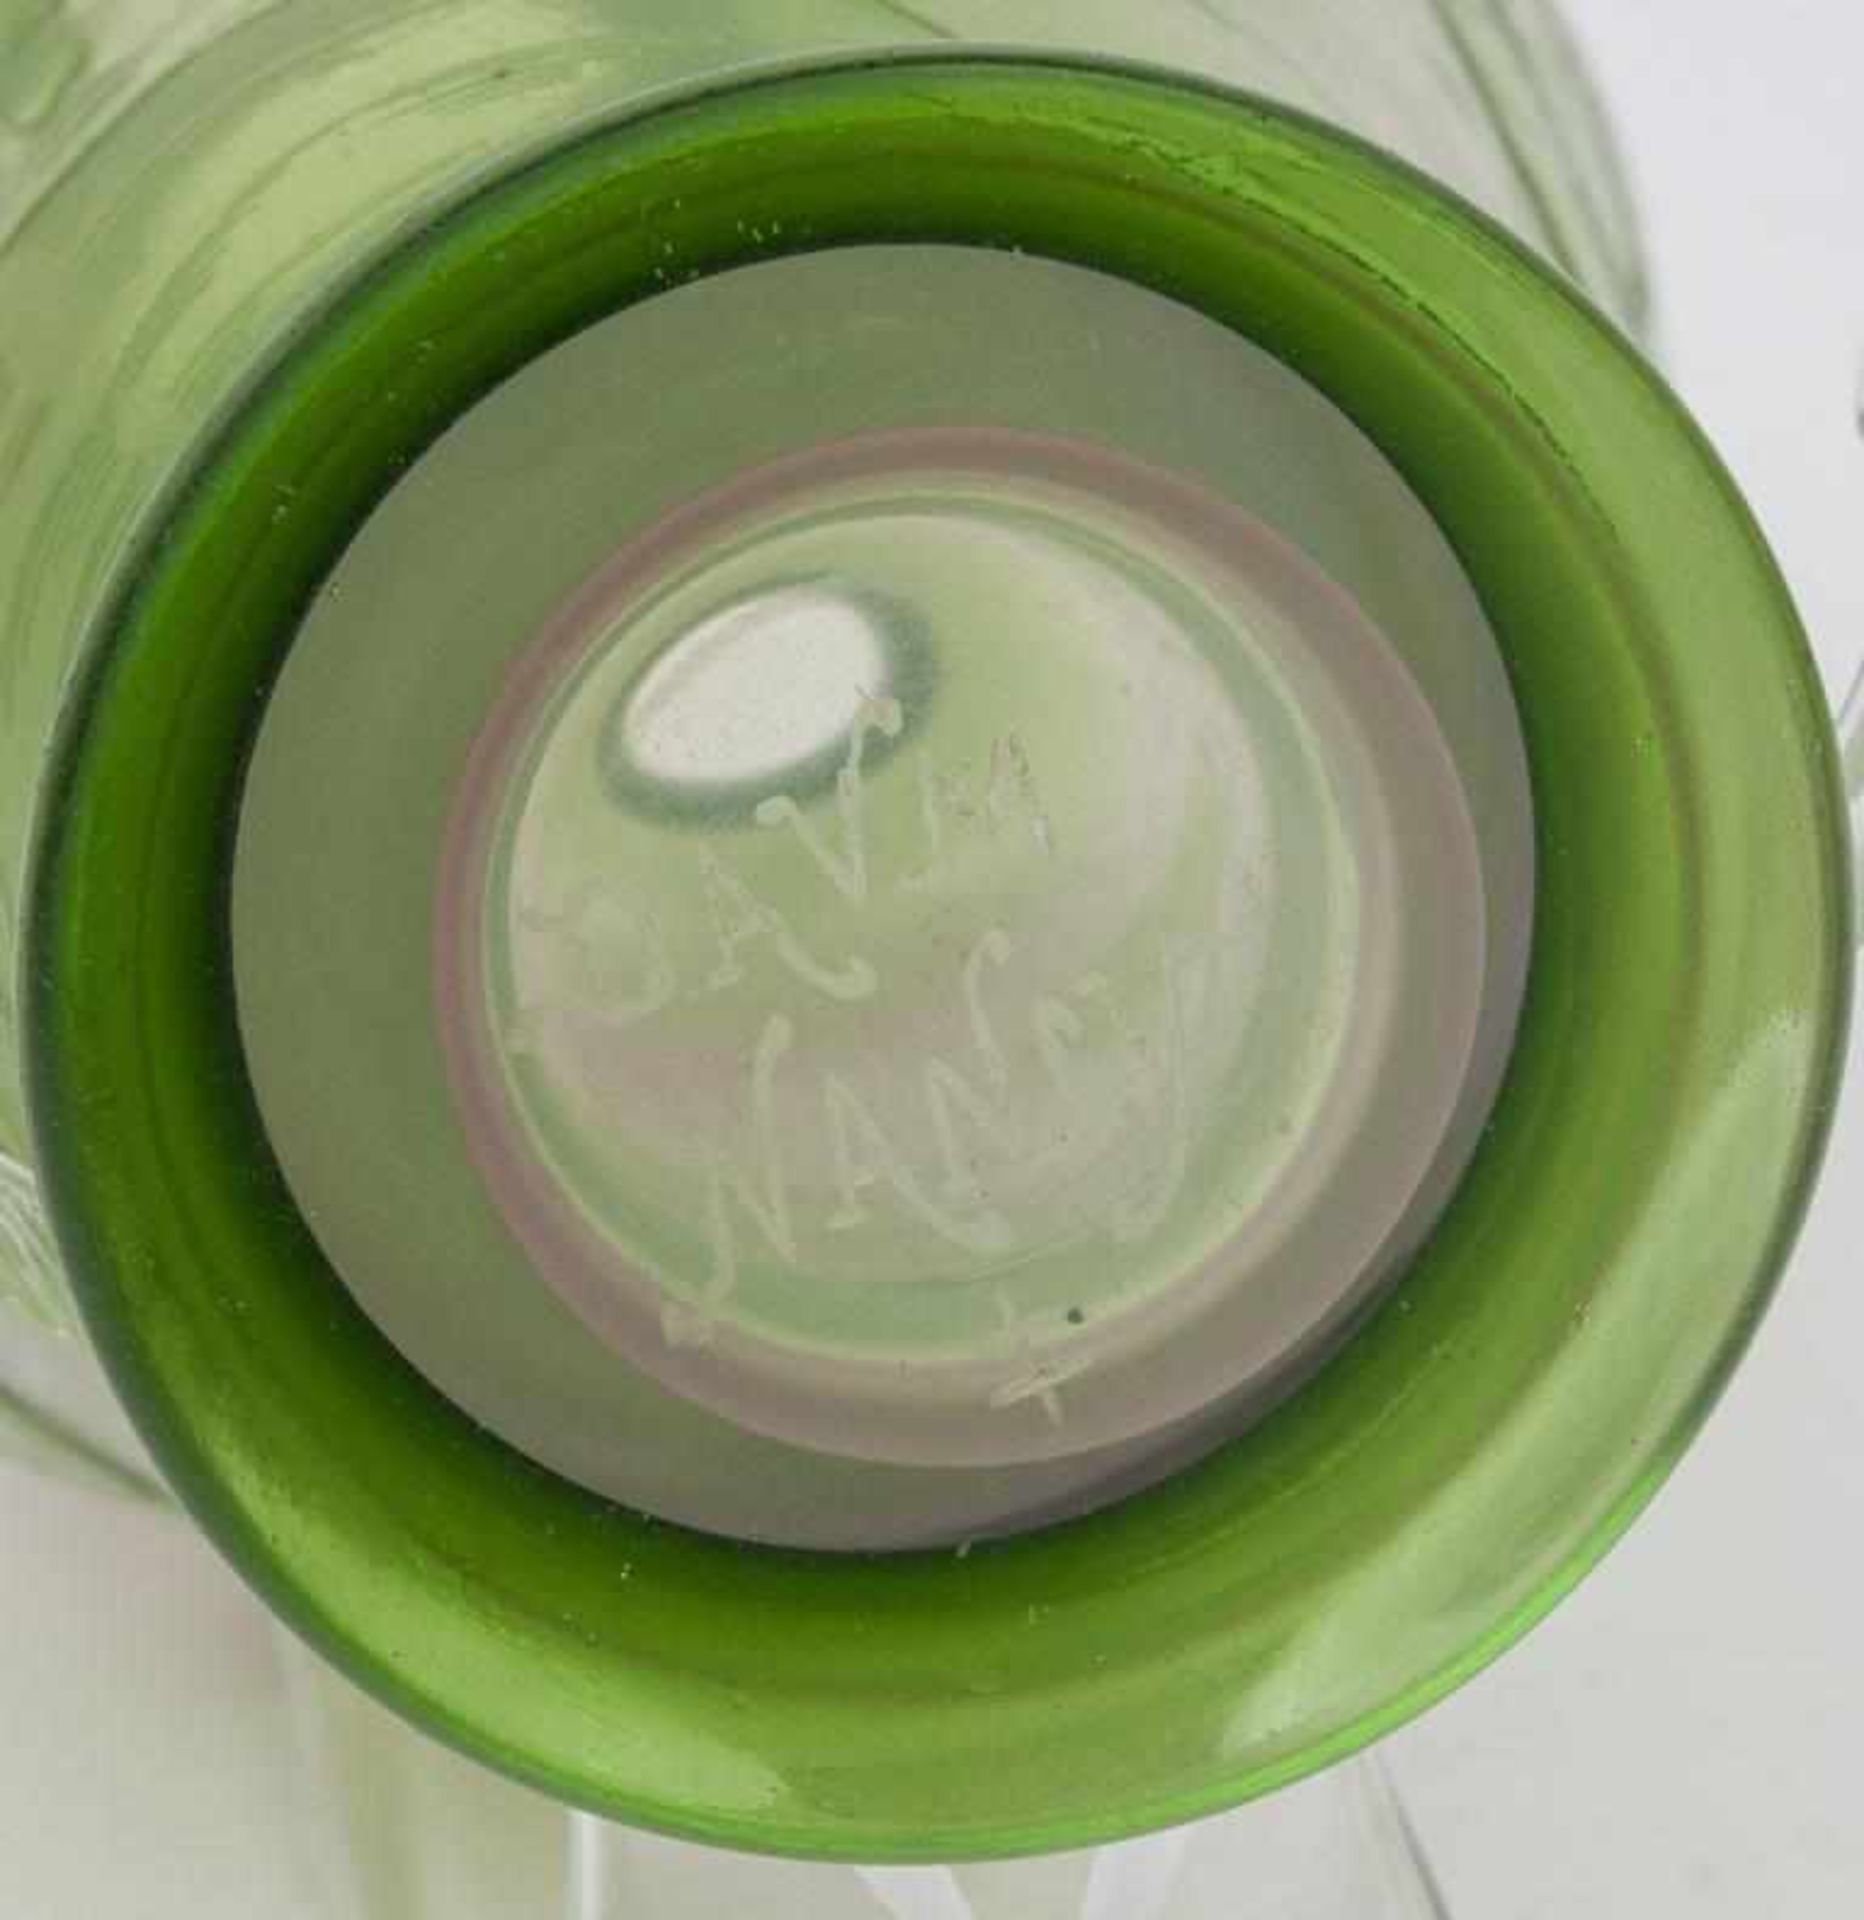 Jugendstil-Vase, Daum Frères, Nancy, um 1900durchsichtiges Glas, zartgrün überfangen, umlaufend - Bild 5 aus 5